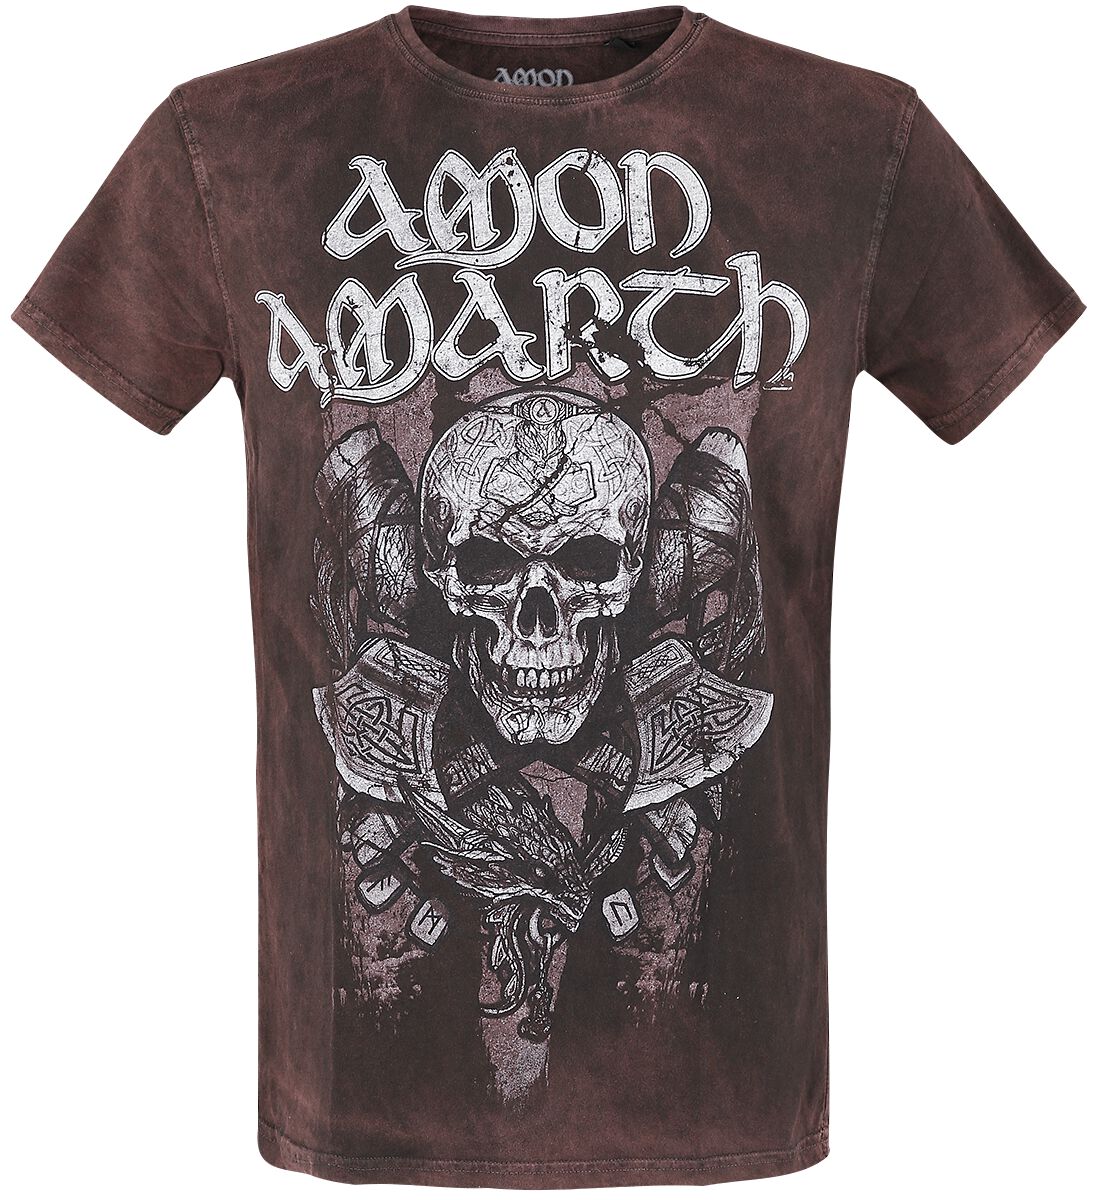 Image of T-Shirt di Amon Amarth - Carved Skull - S a M - Uomo - marrone